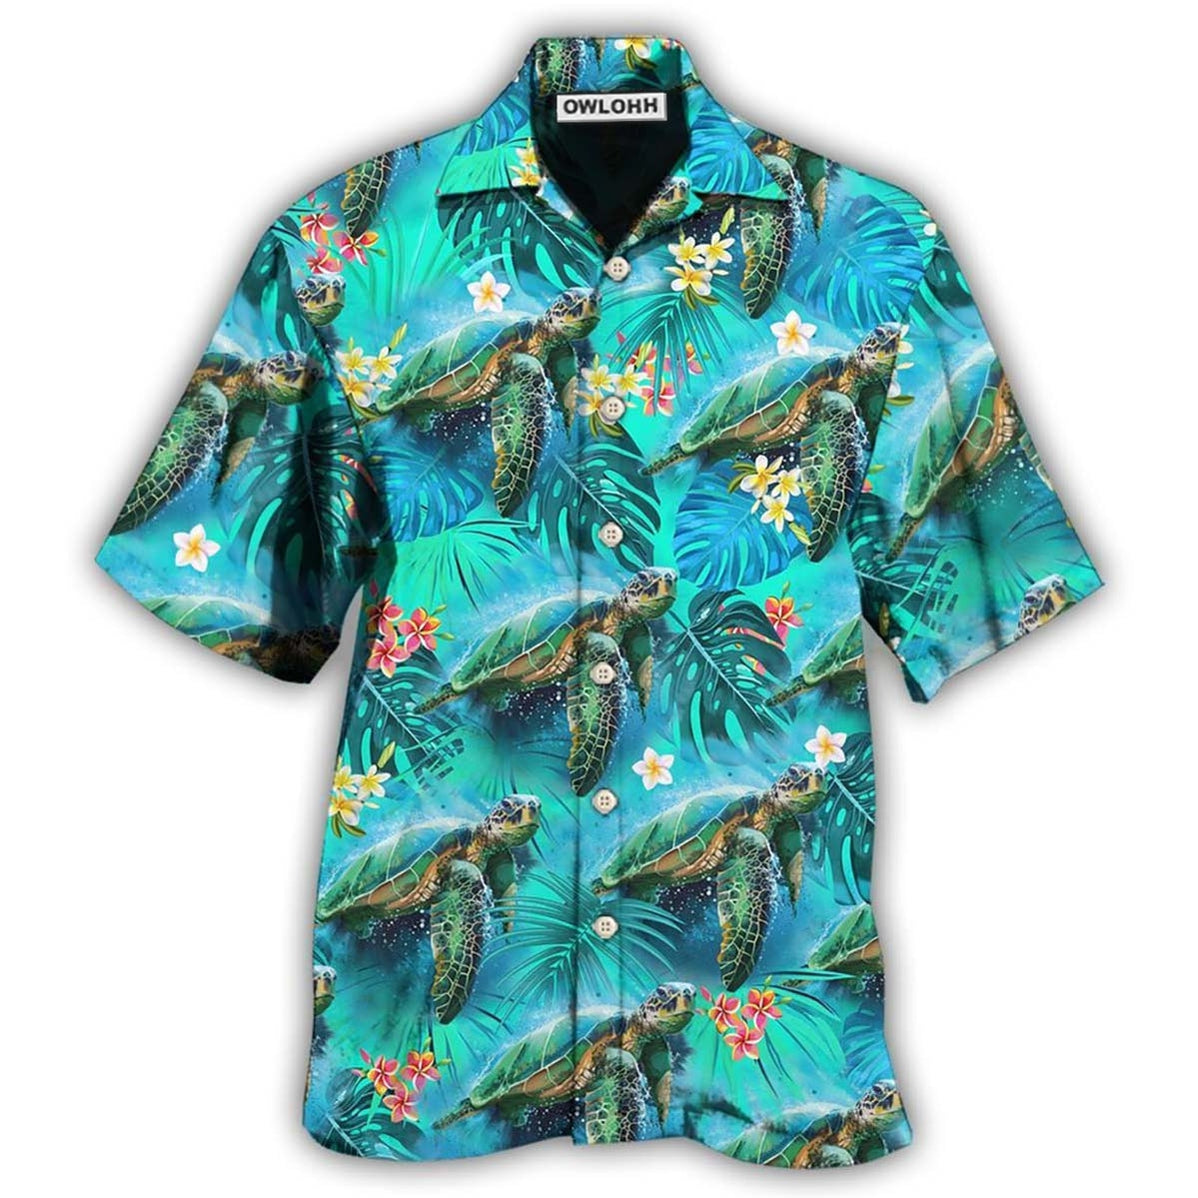 Hawaiian Shirt / Adults / S Turtle Love Beautiful Life - Hawaiian Shirt - Owls Matrix LTD